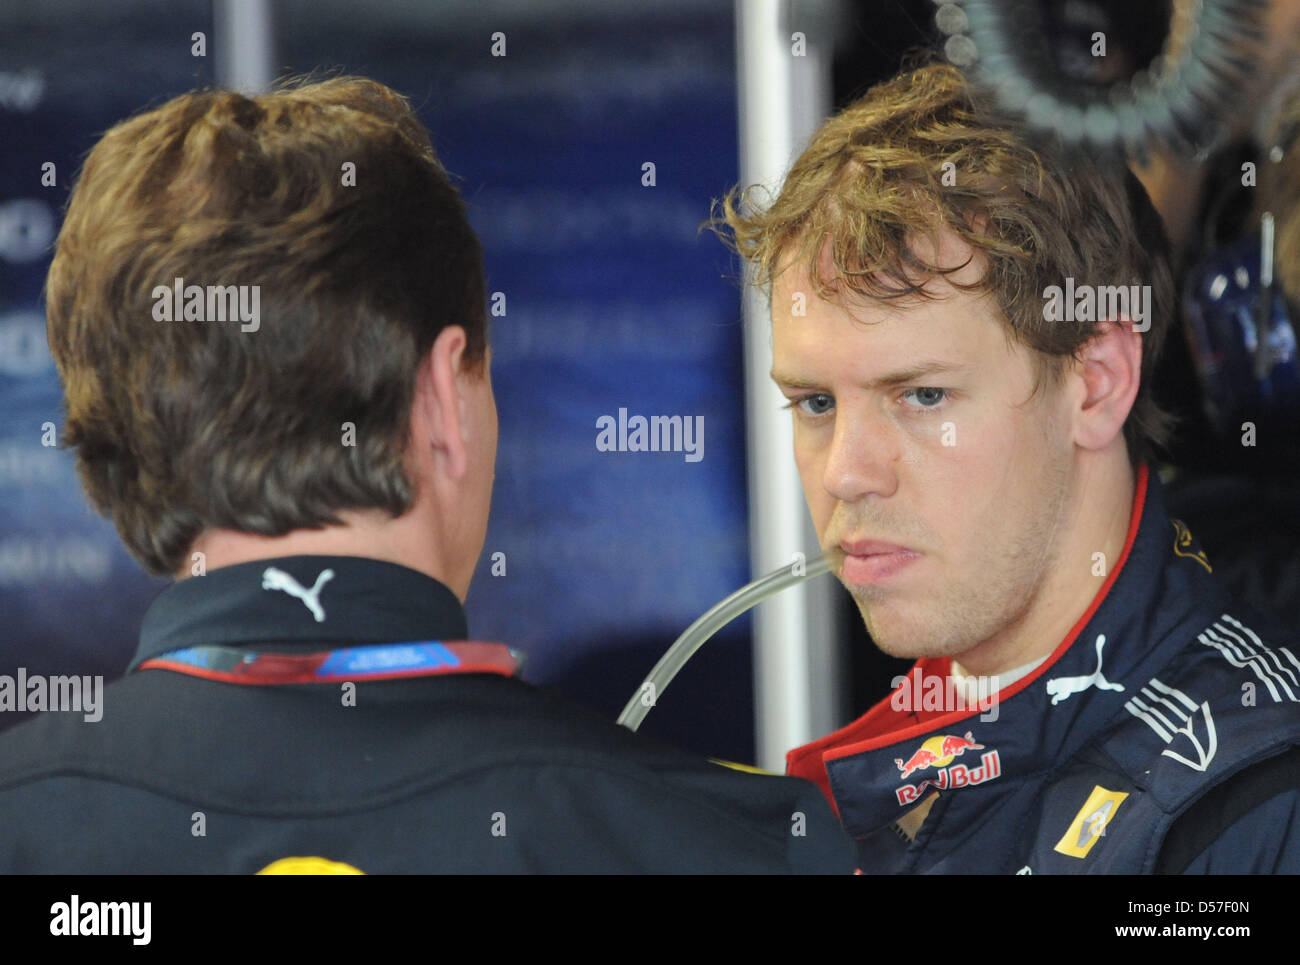 Il driver tedesco Sebastian Vettel della Red Bull Racing (R) parla con il team principal Christian Horner (L) durante la pratica 1 sessione al circuito di Strada di Monte Carlo, Monaco, 13 maggio 2010. Il 2010 Grand Prix di Formula 1 di Monaco si terrà il 16 maggio 2010. Foto: PETER STEFFEN Foto Stock